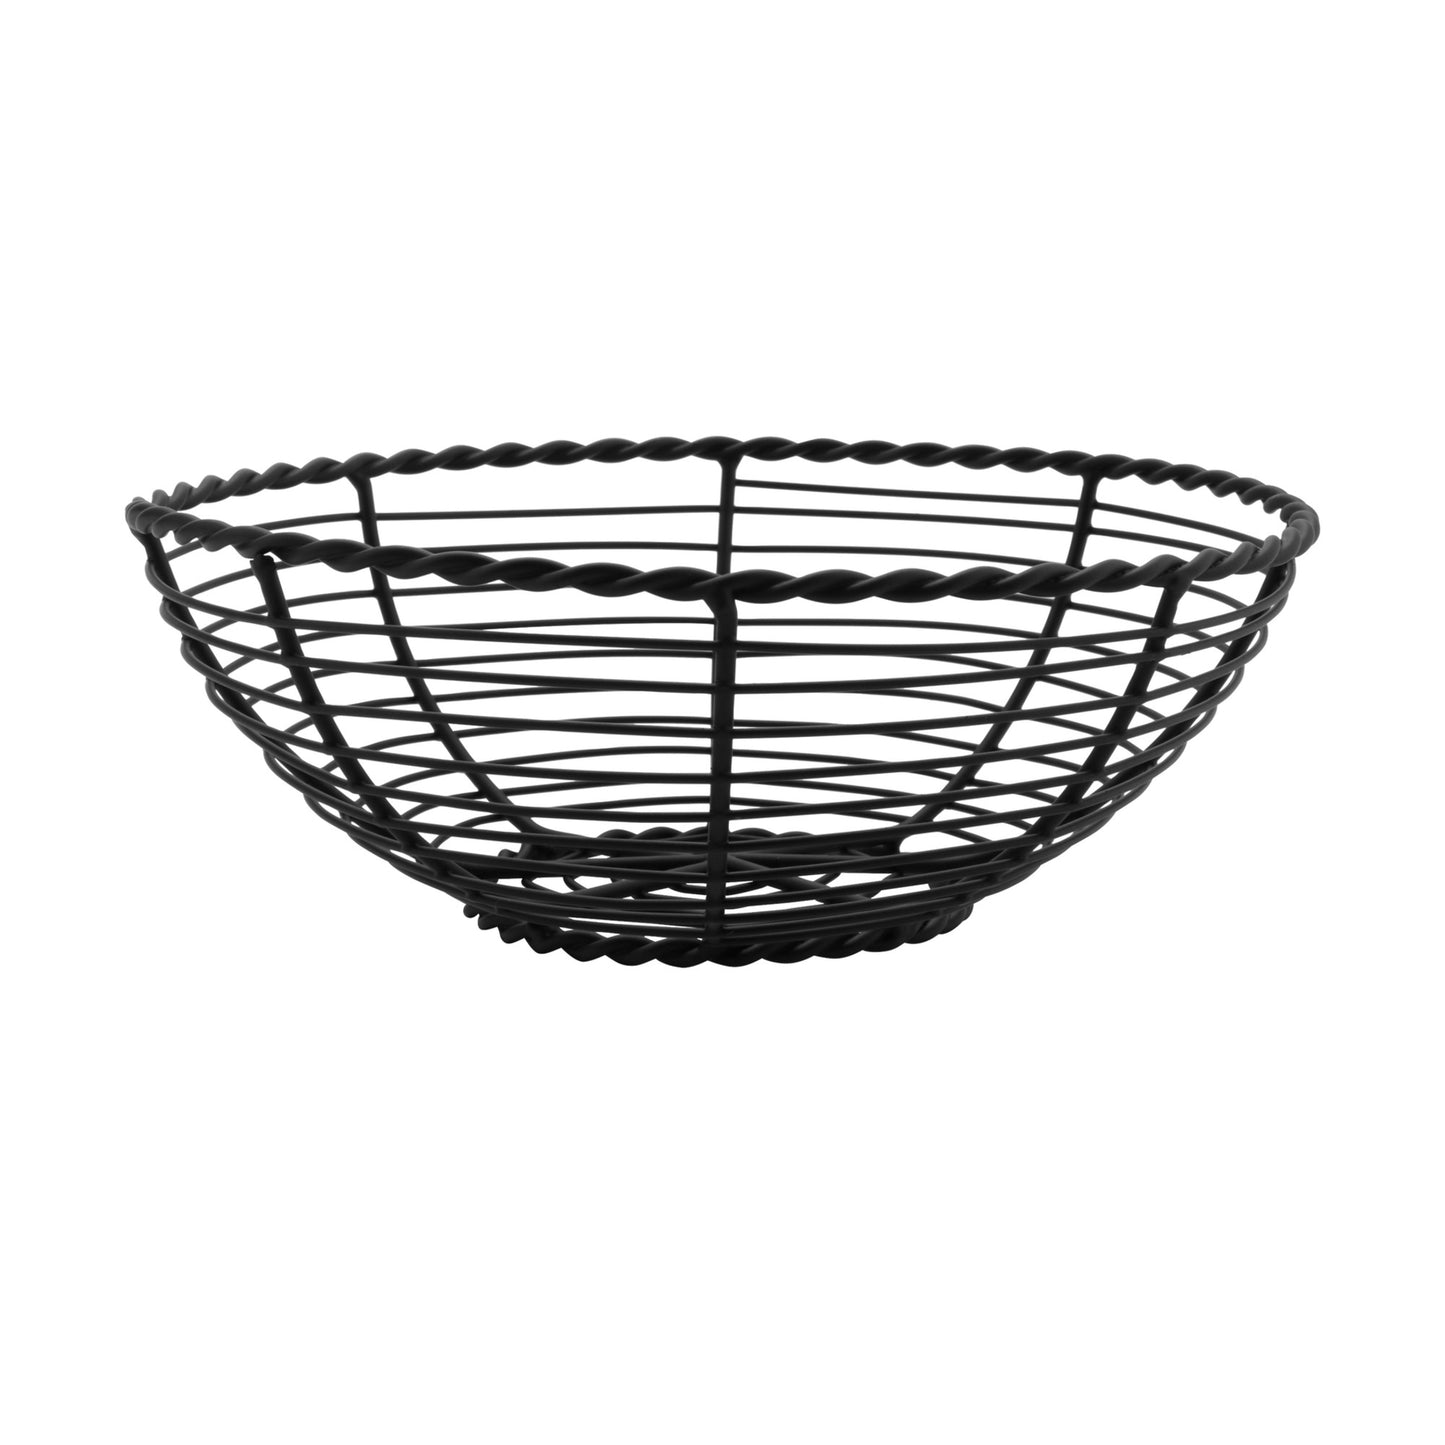 8" Round Black Wire Basket, 3" Deep